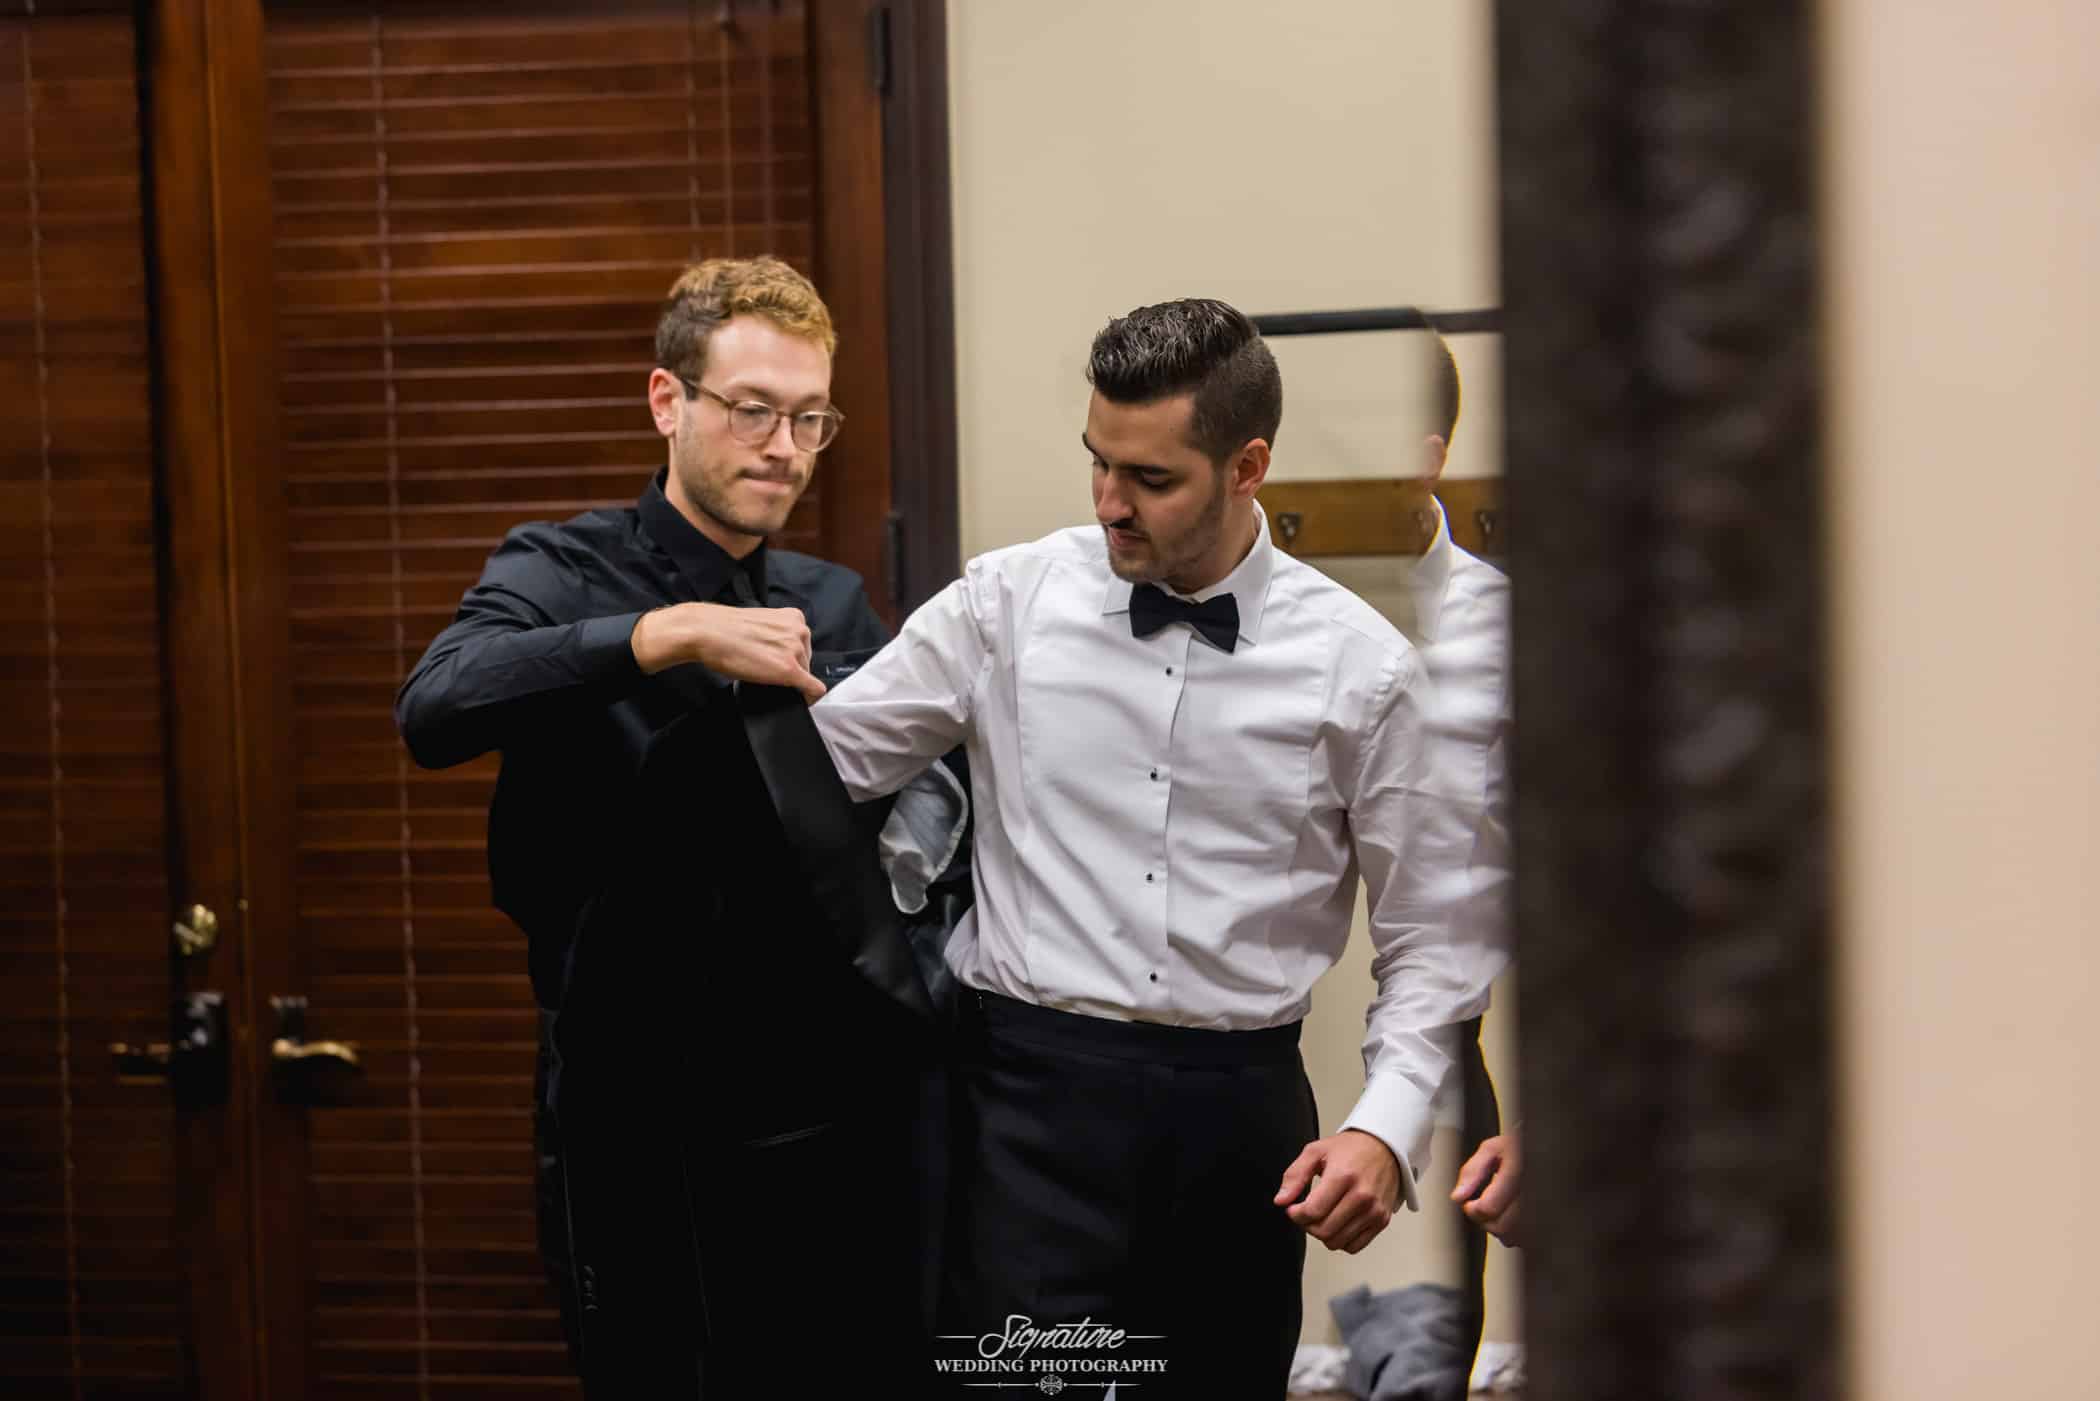 Groomsmen helping groom with jacket